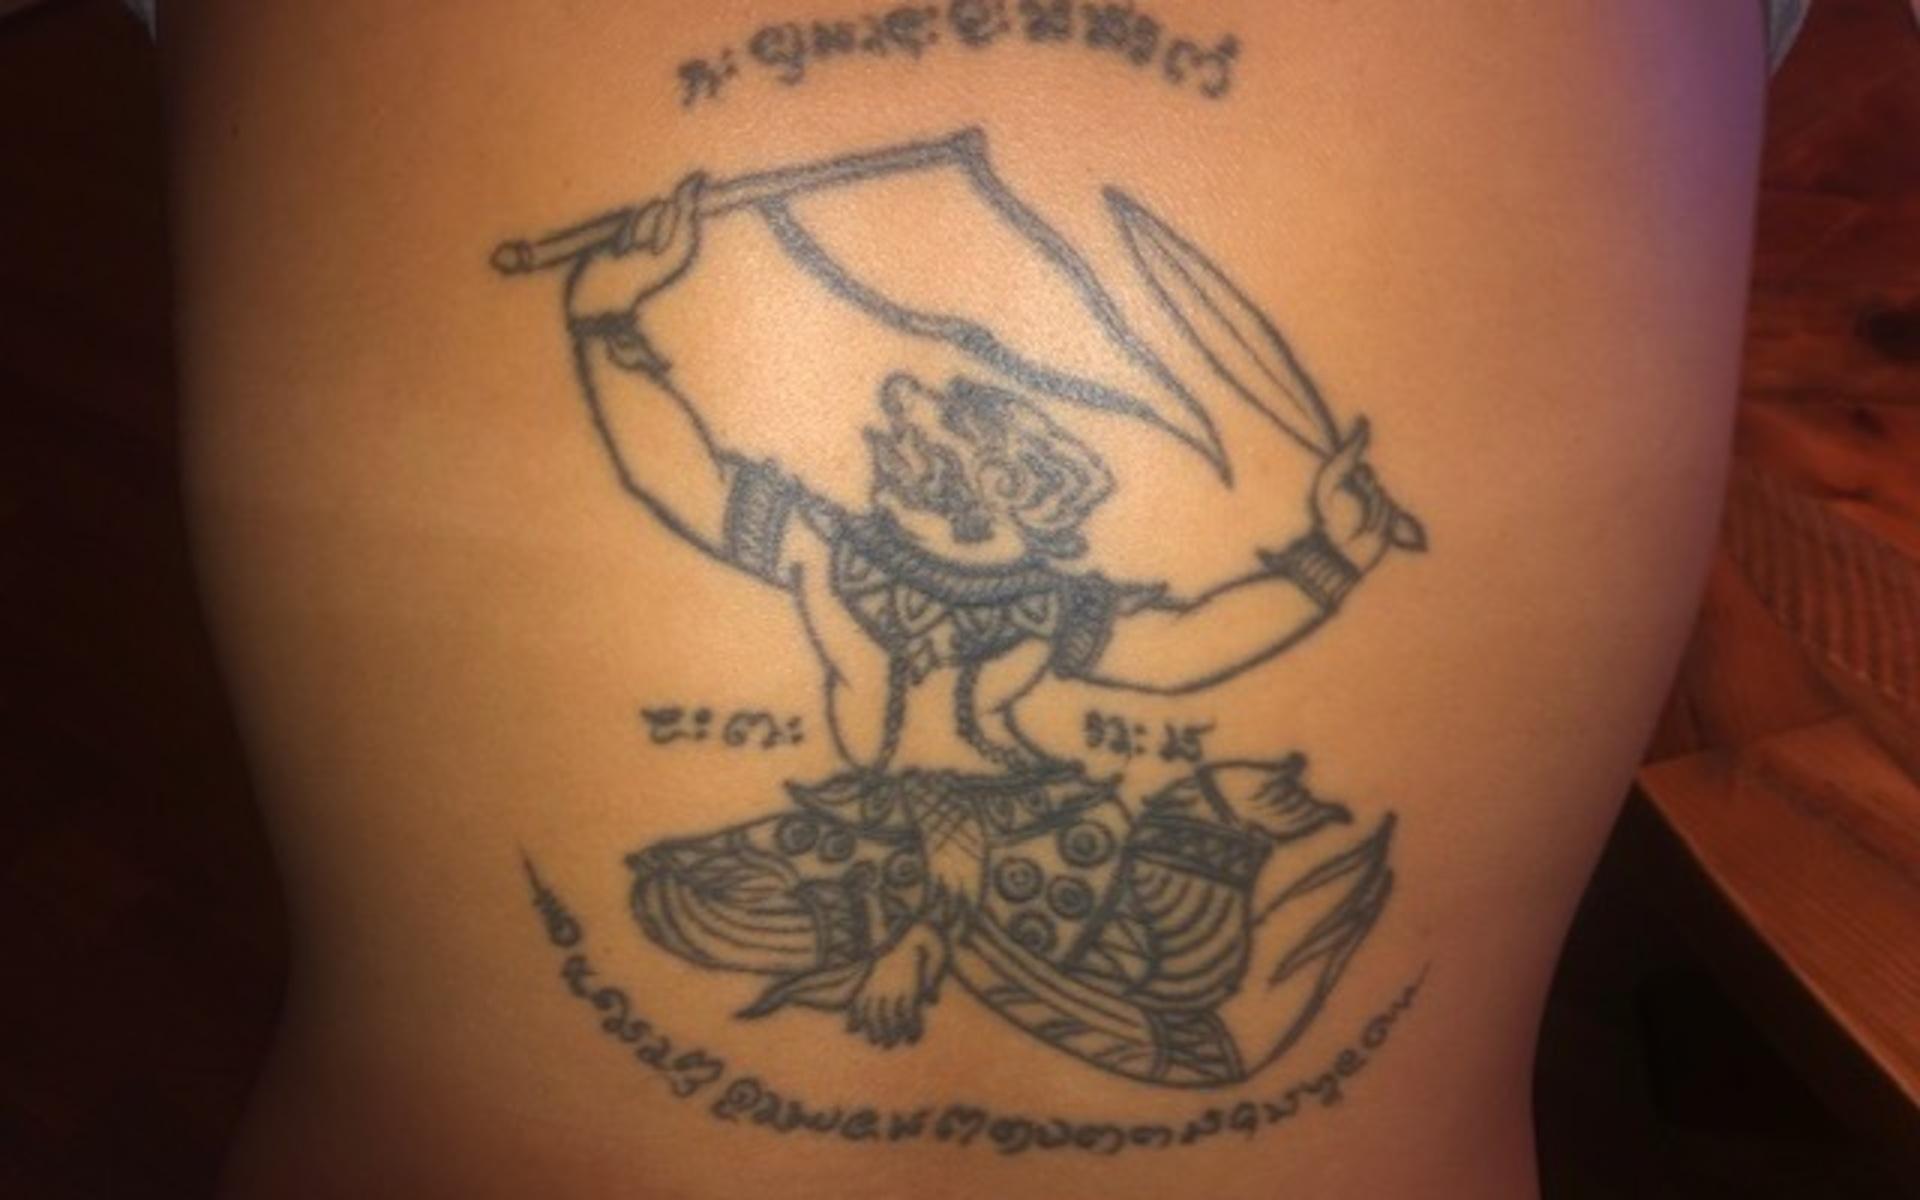 Bom Börjesson skriver: ”Min tatuering betyder att jag alltid är beredd (vänsterhand som håller i svärdet), att jag går i mål (höger hand som håller i flaggan) och aldrig ger upp.”